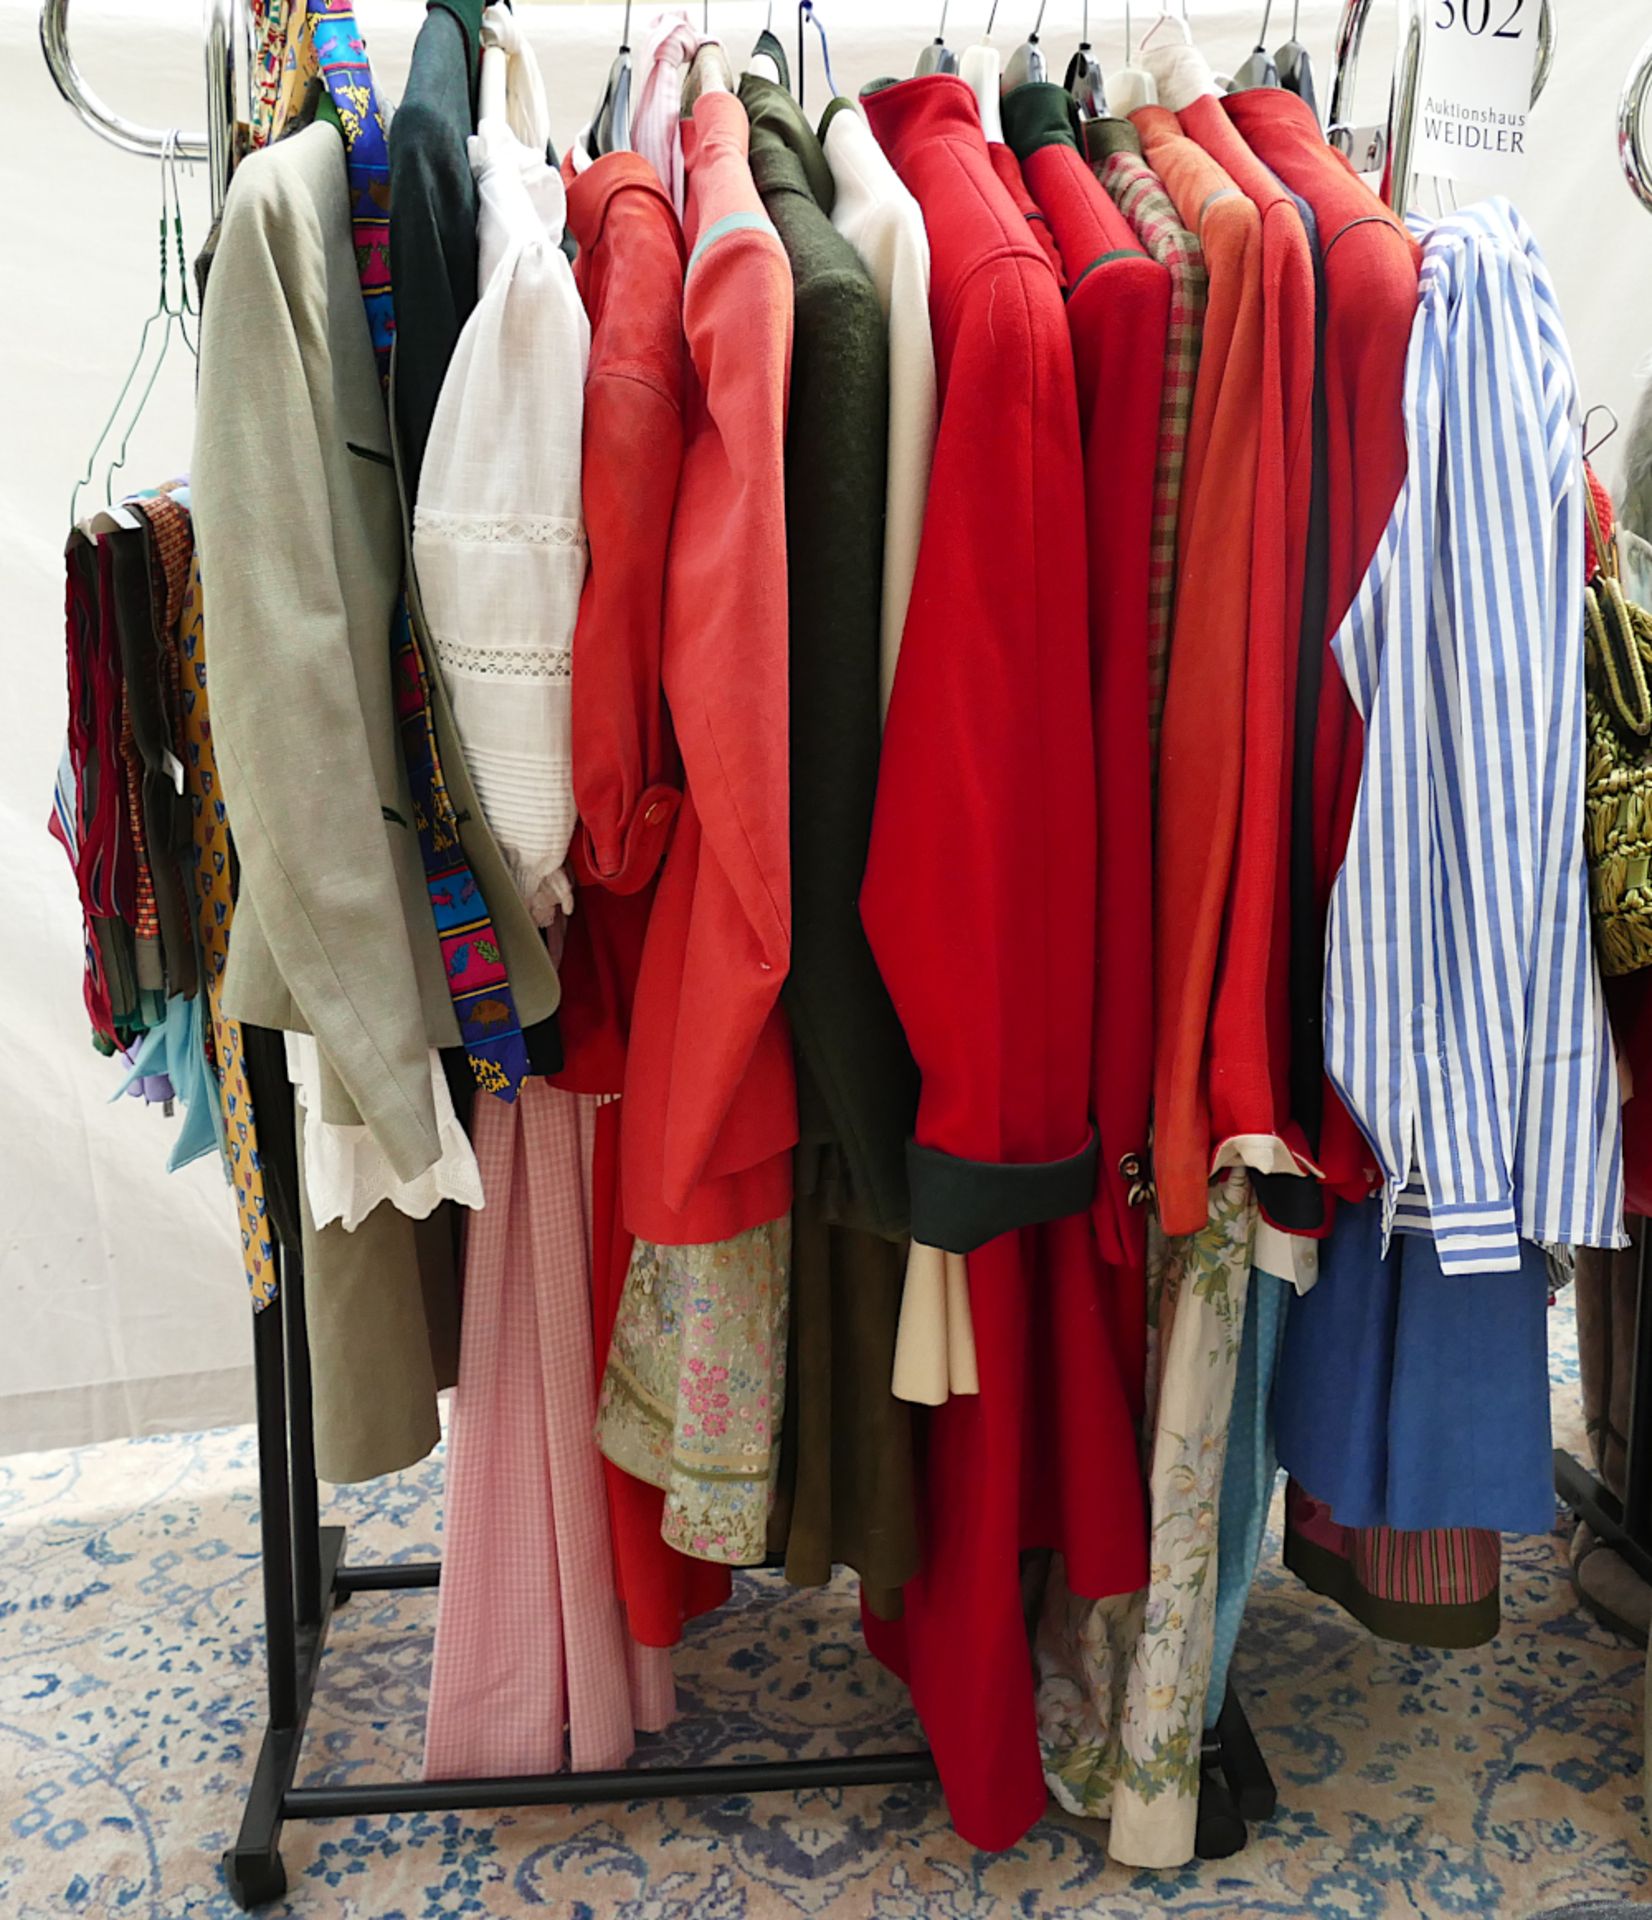 2 Kleiderständer mit Damenkleidung und Pelze, Taschen, Tücher, ca Gr. 36/38, Trachtenmode z.T. Loden